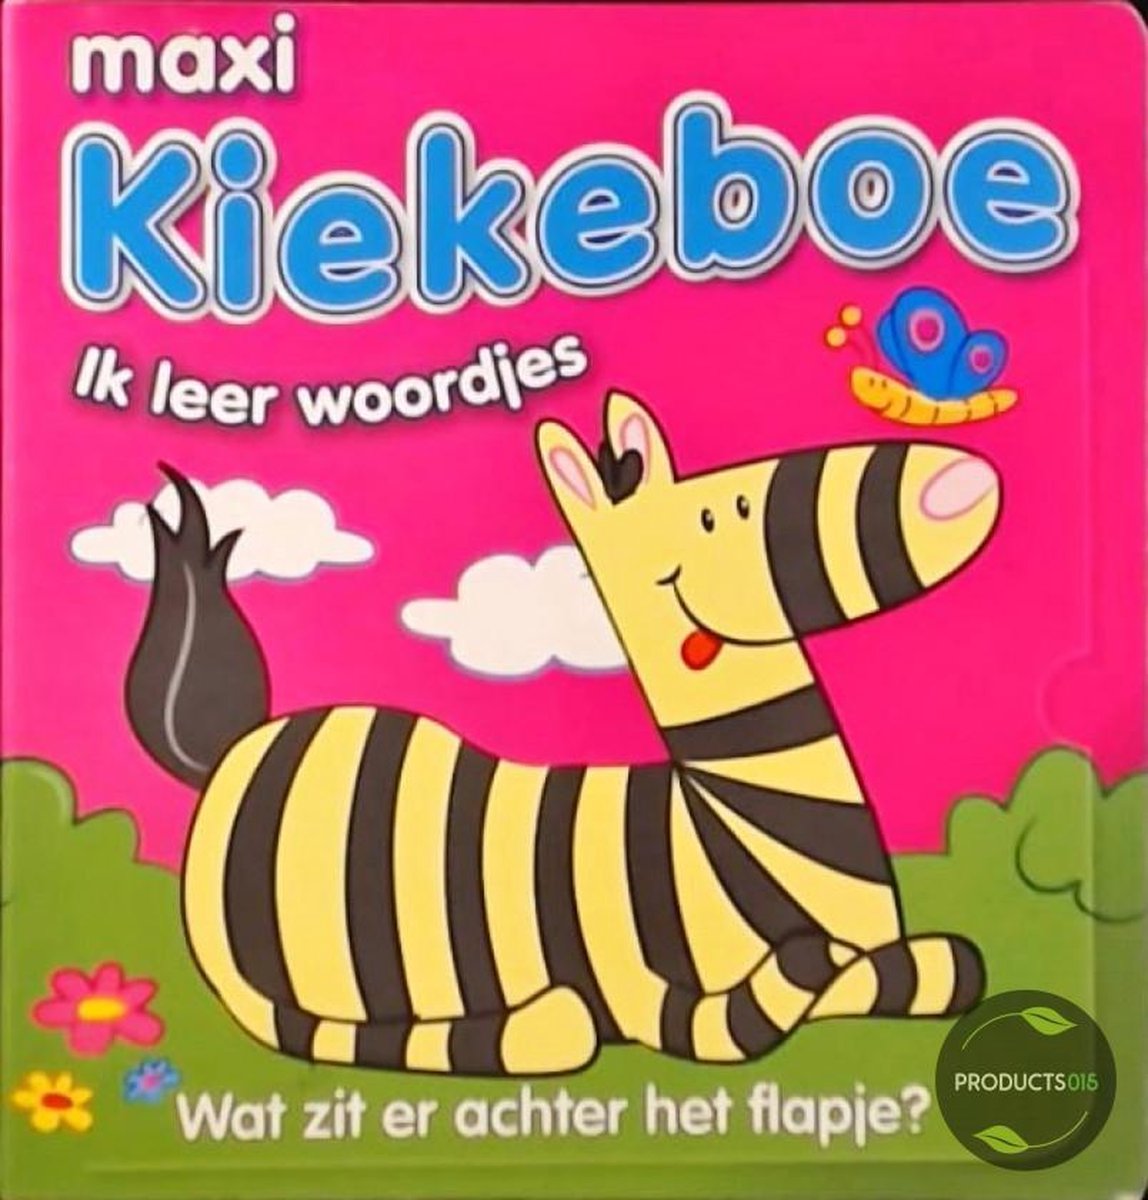 Maxi Kiekeboe woordjes leren